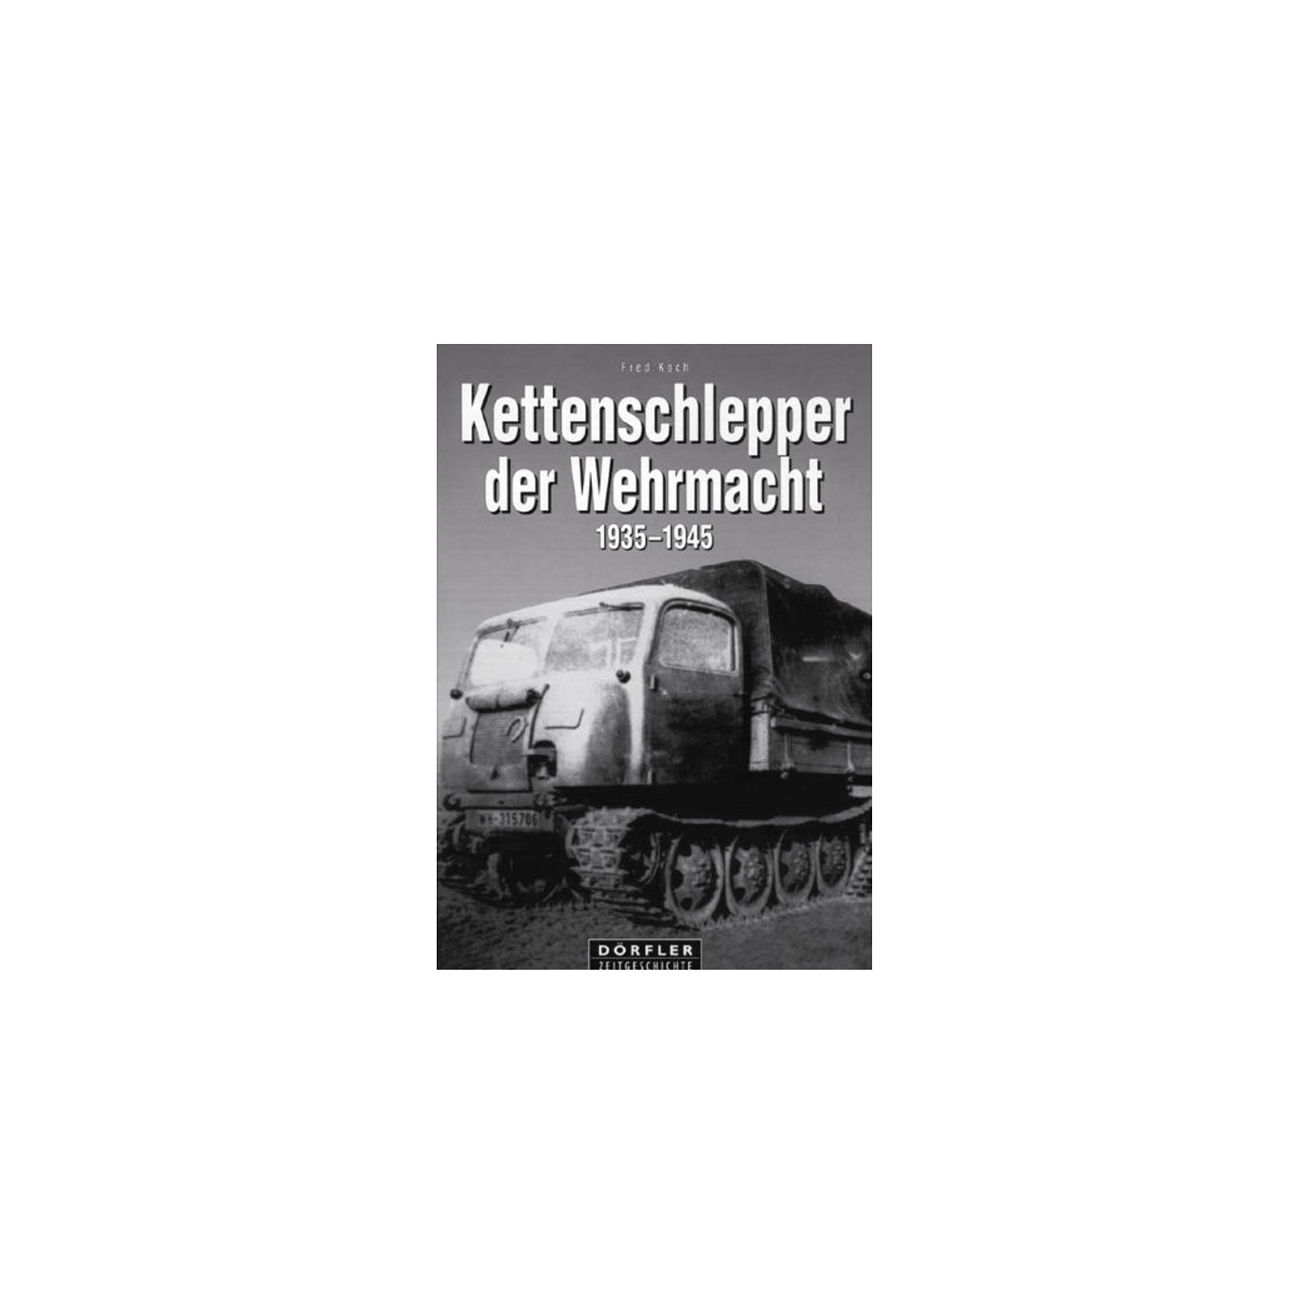  Kettenschlepper der Wehrmacht 1935-1945